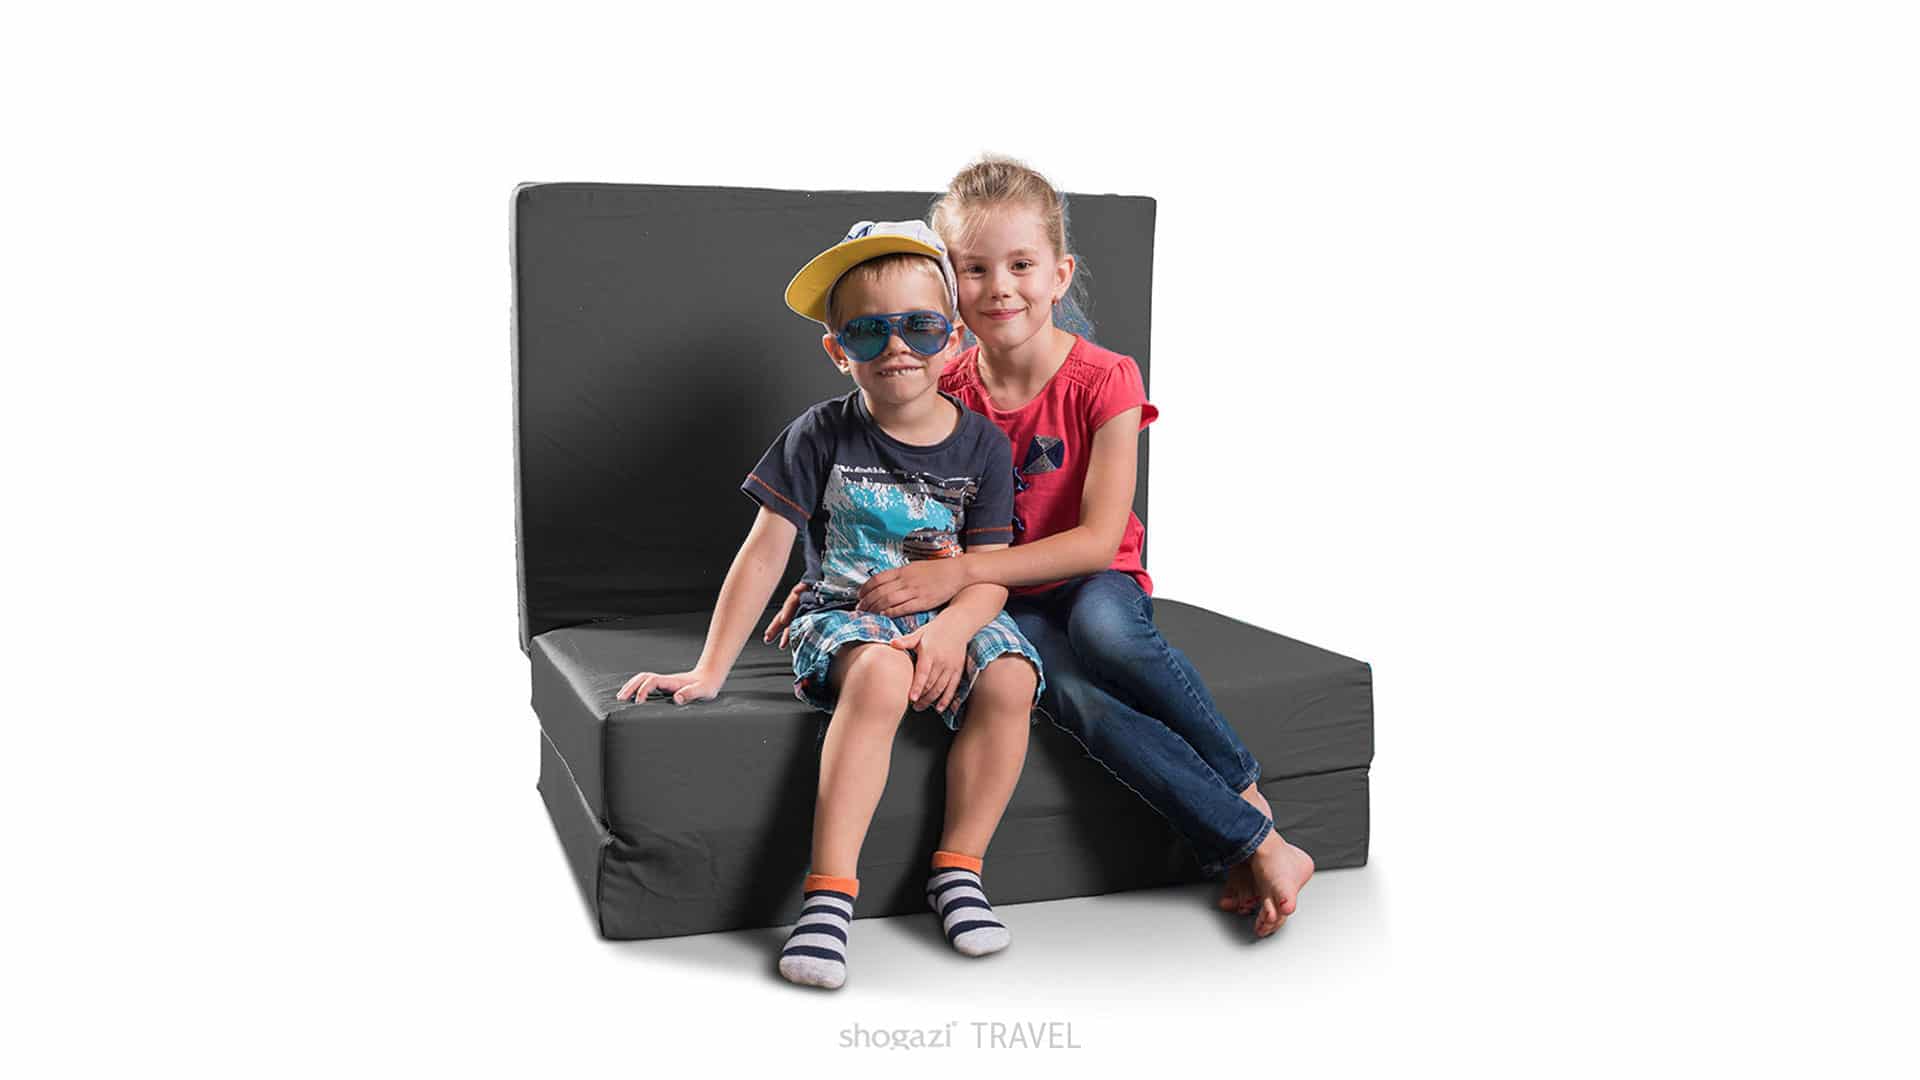 Auf einer Klappmatratze in anthrazit sitzen zwei Kinder